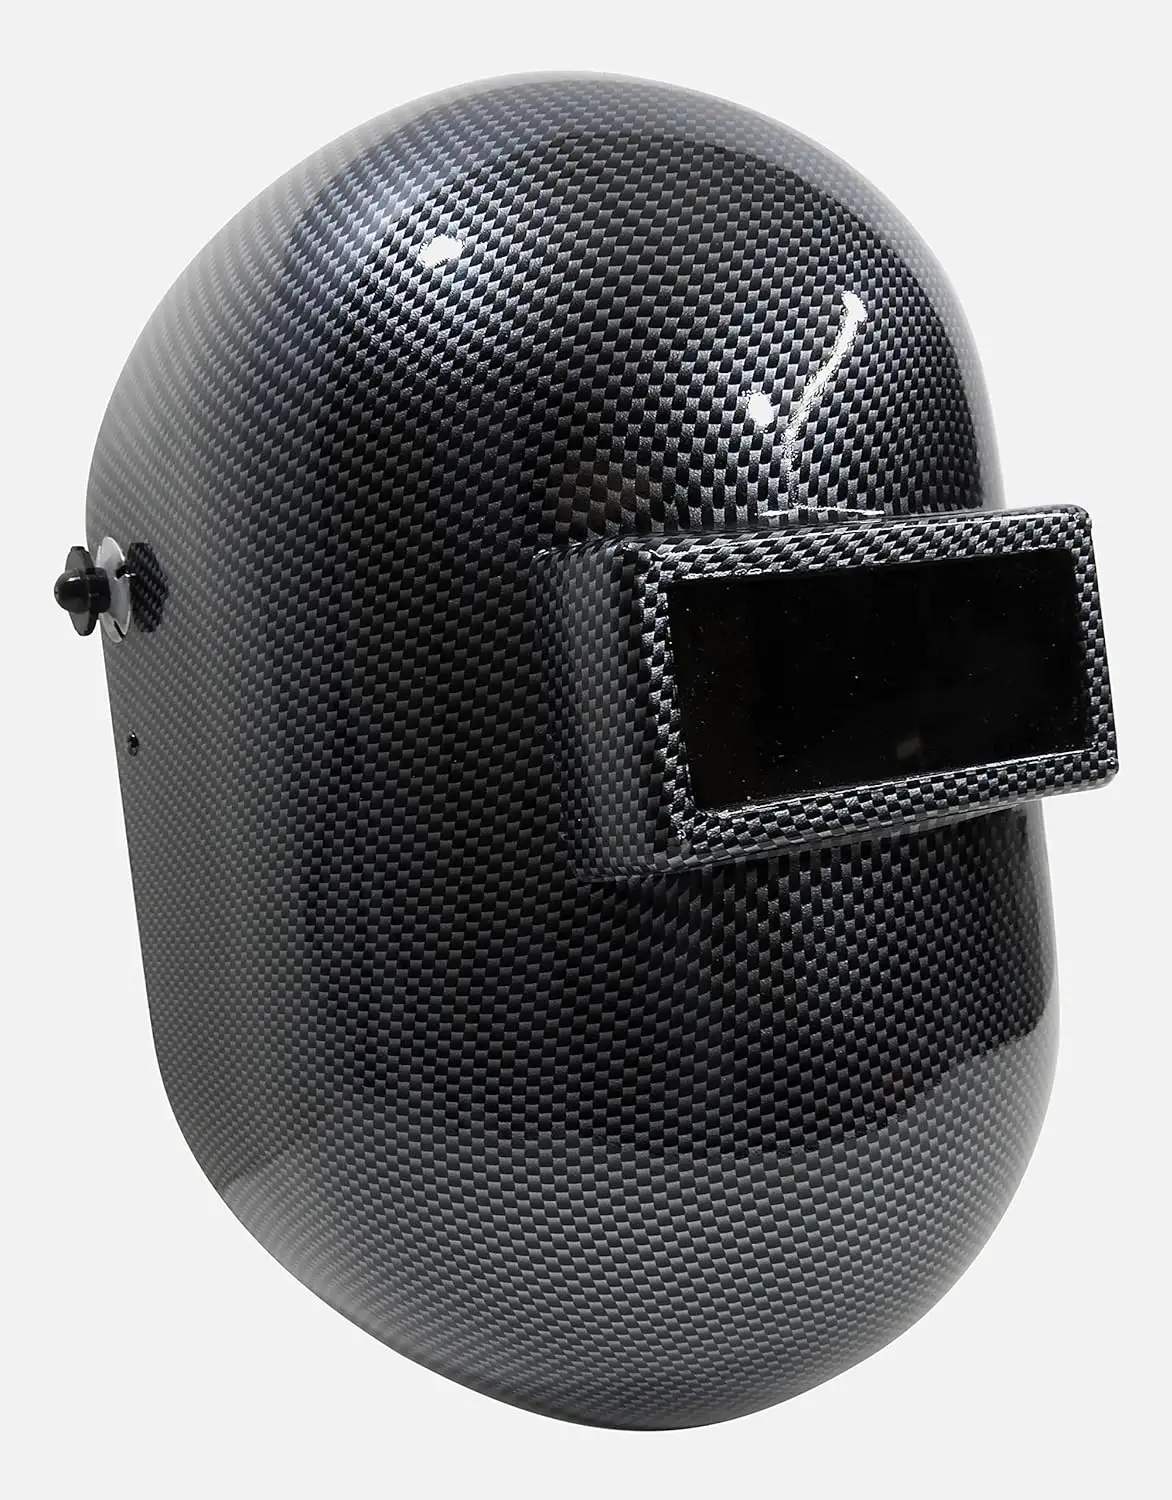 Maschera in fibra di carbonio personalizzata fornita in fabbrica per la saldatura